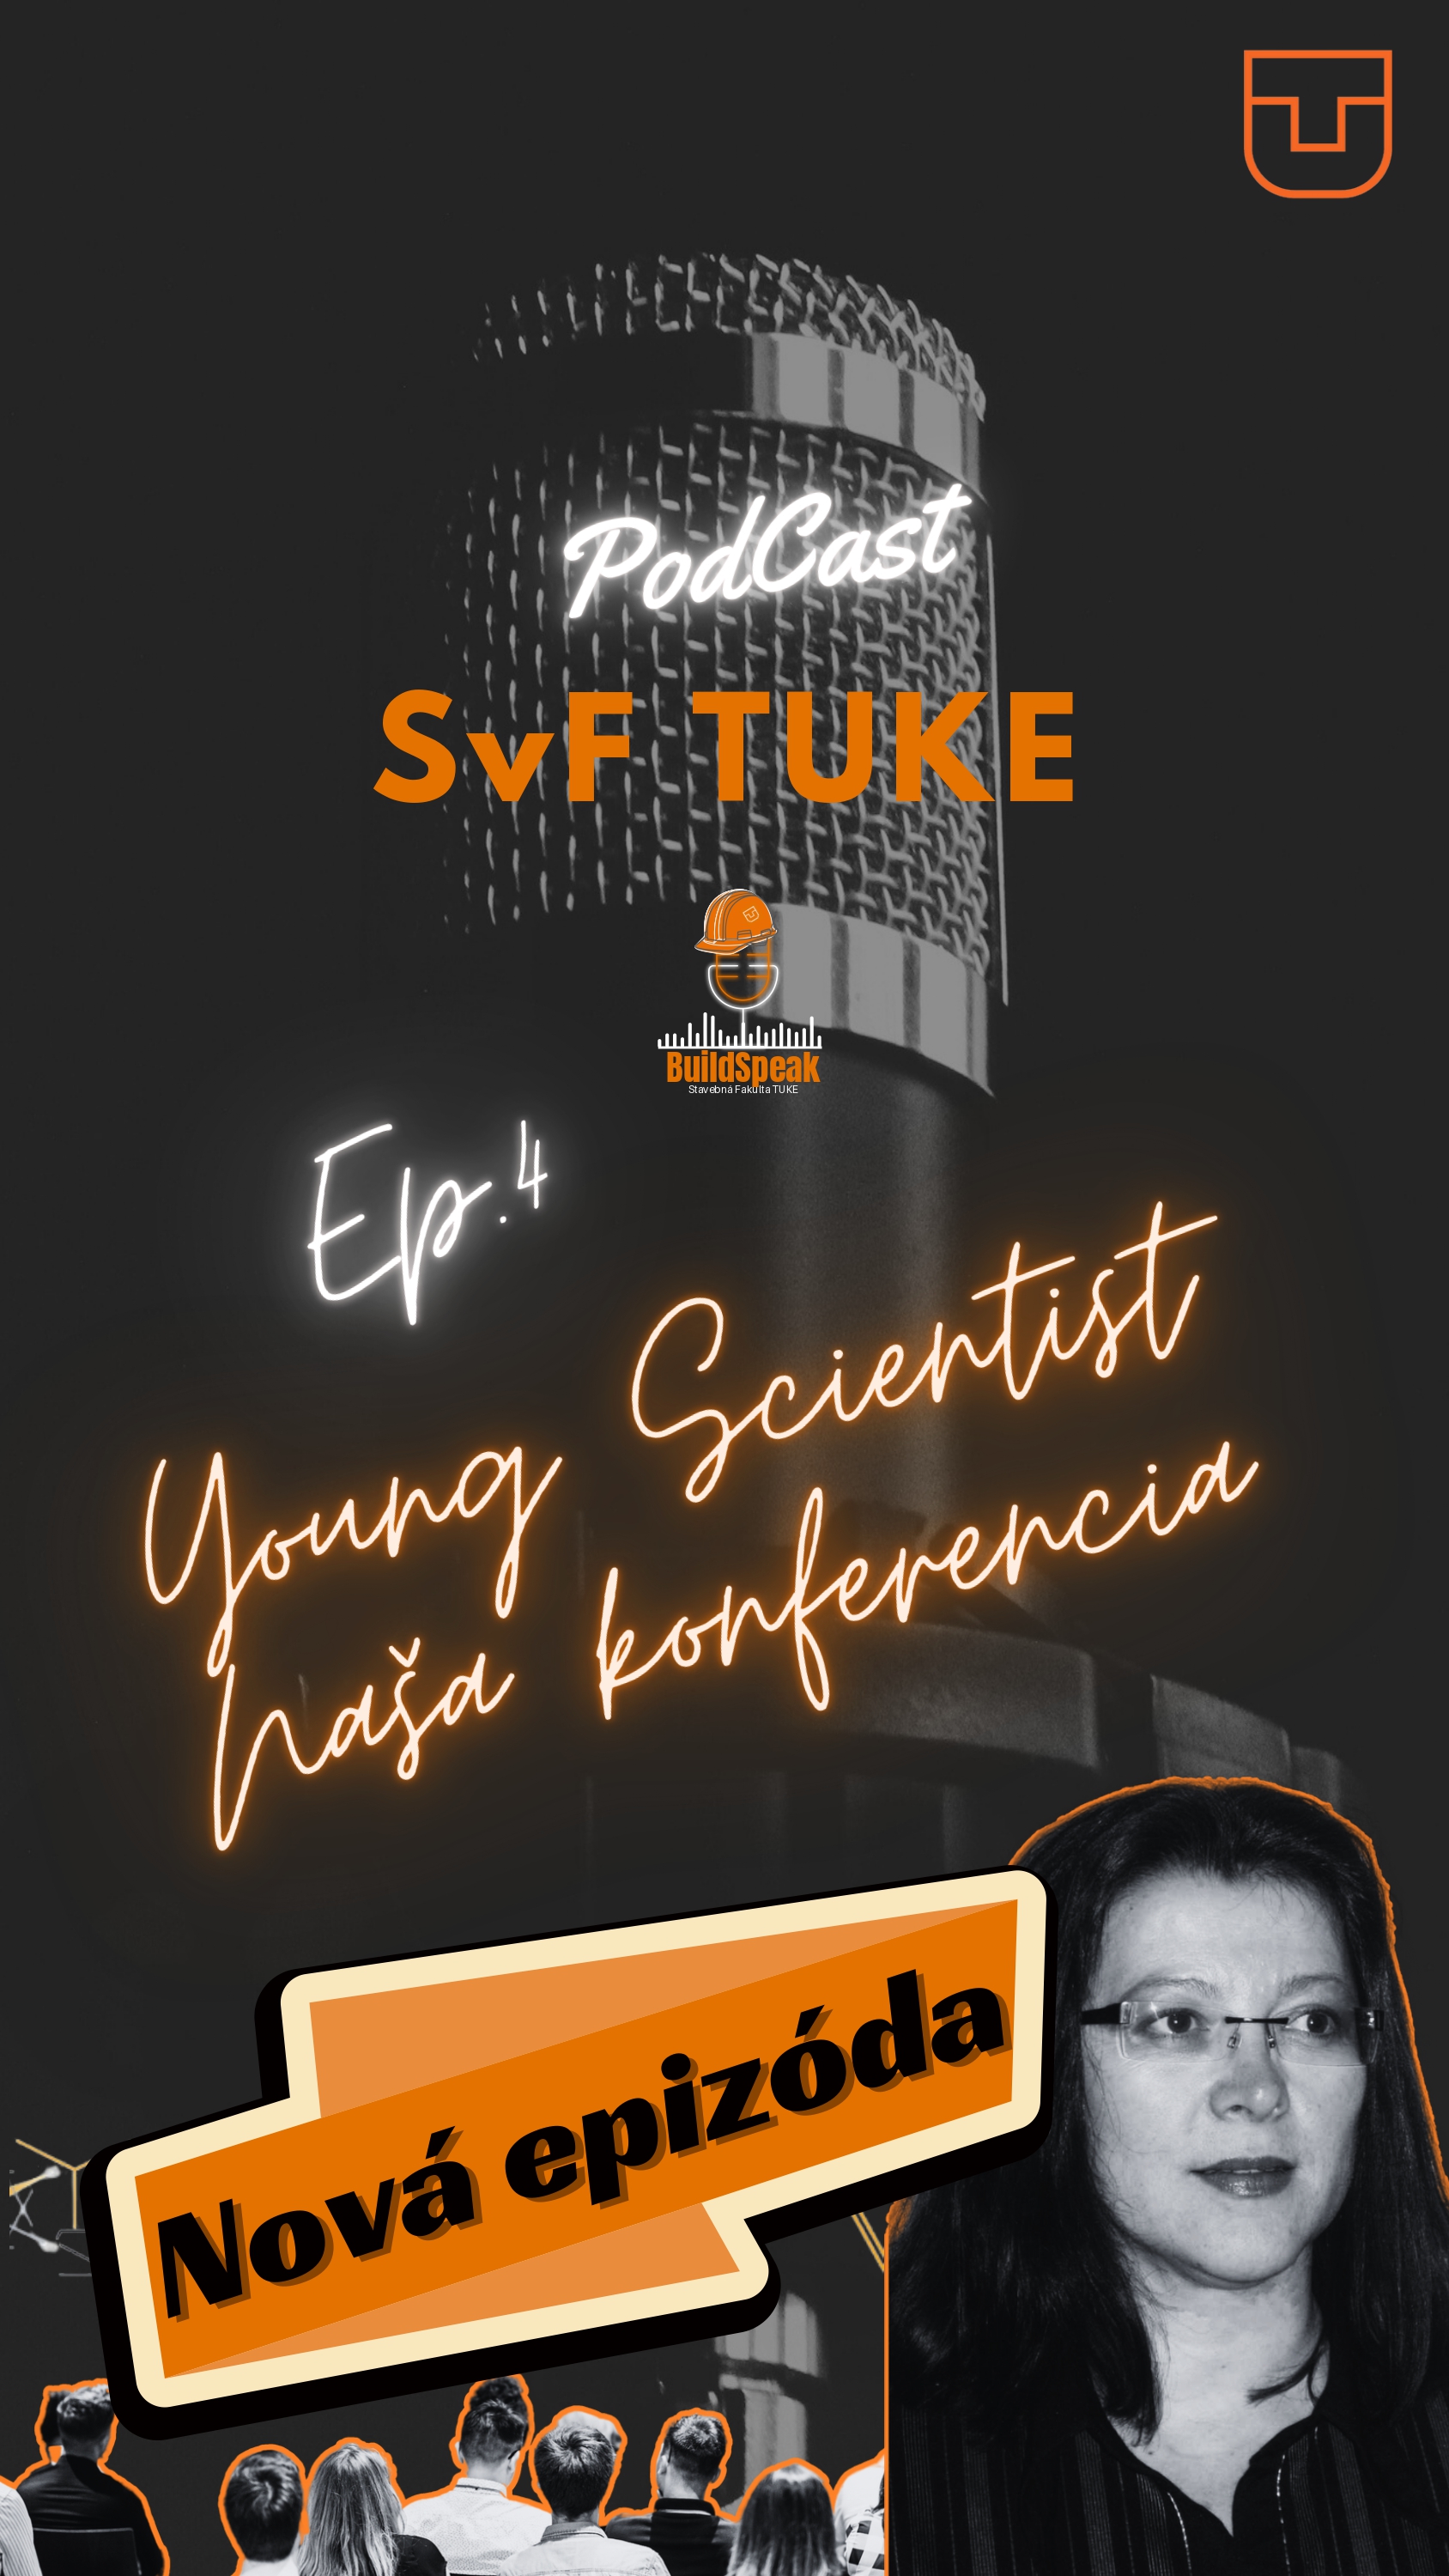 BuildSpeak: podcast SvF TUKE - Ep.04: Young Scientist - naša konferencia